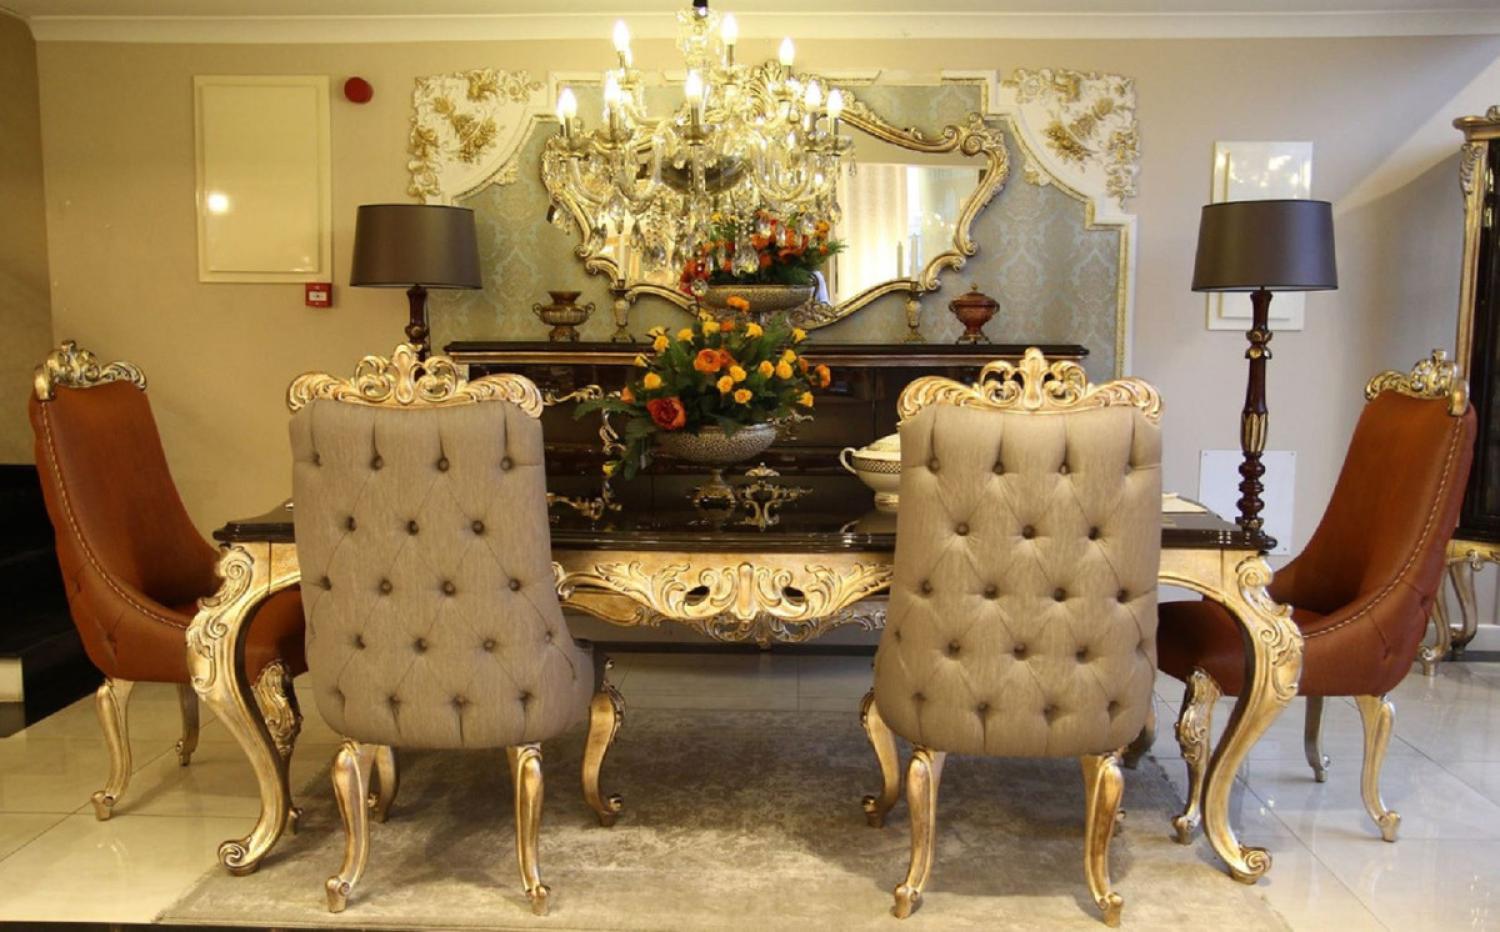 Casa Padrino Luxus Barock Esszimmerstuhl Set Grau / Braun / Gold - 6 Küchen Stühle im Barockstil - Barock Esszimmer Möbel Bild 1